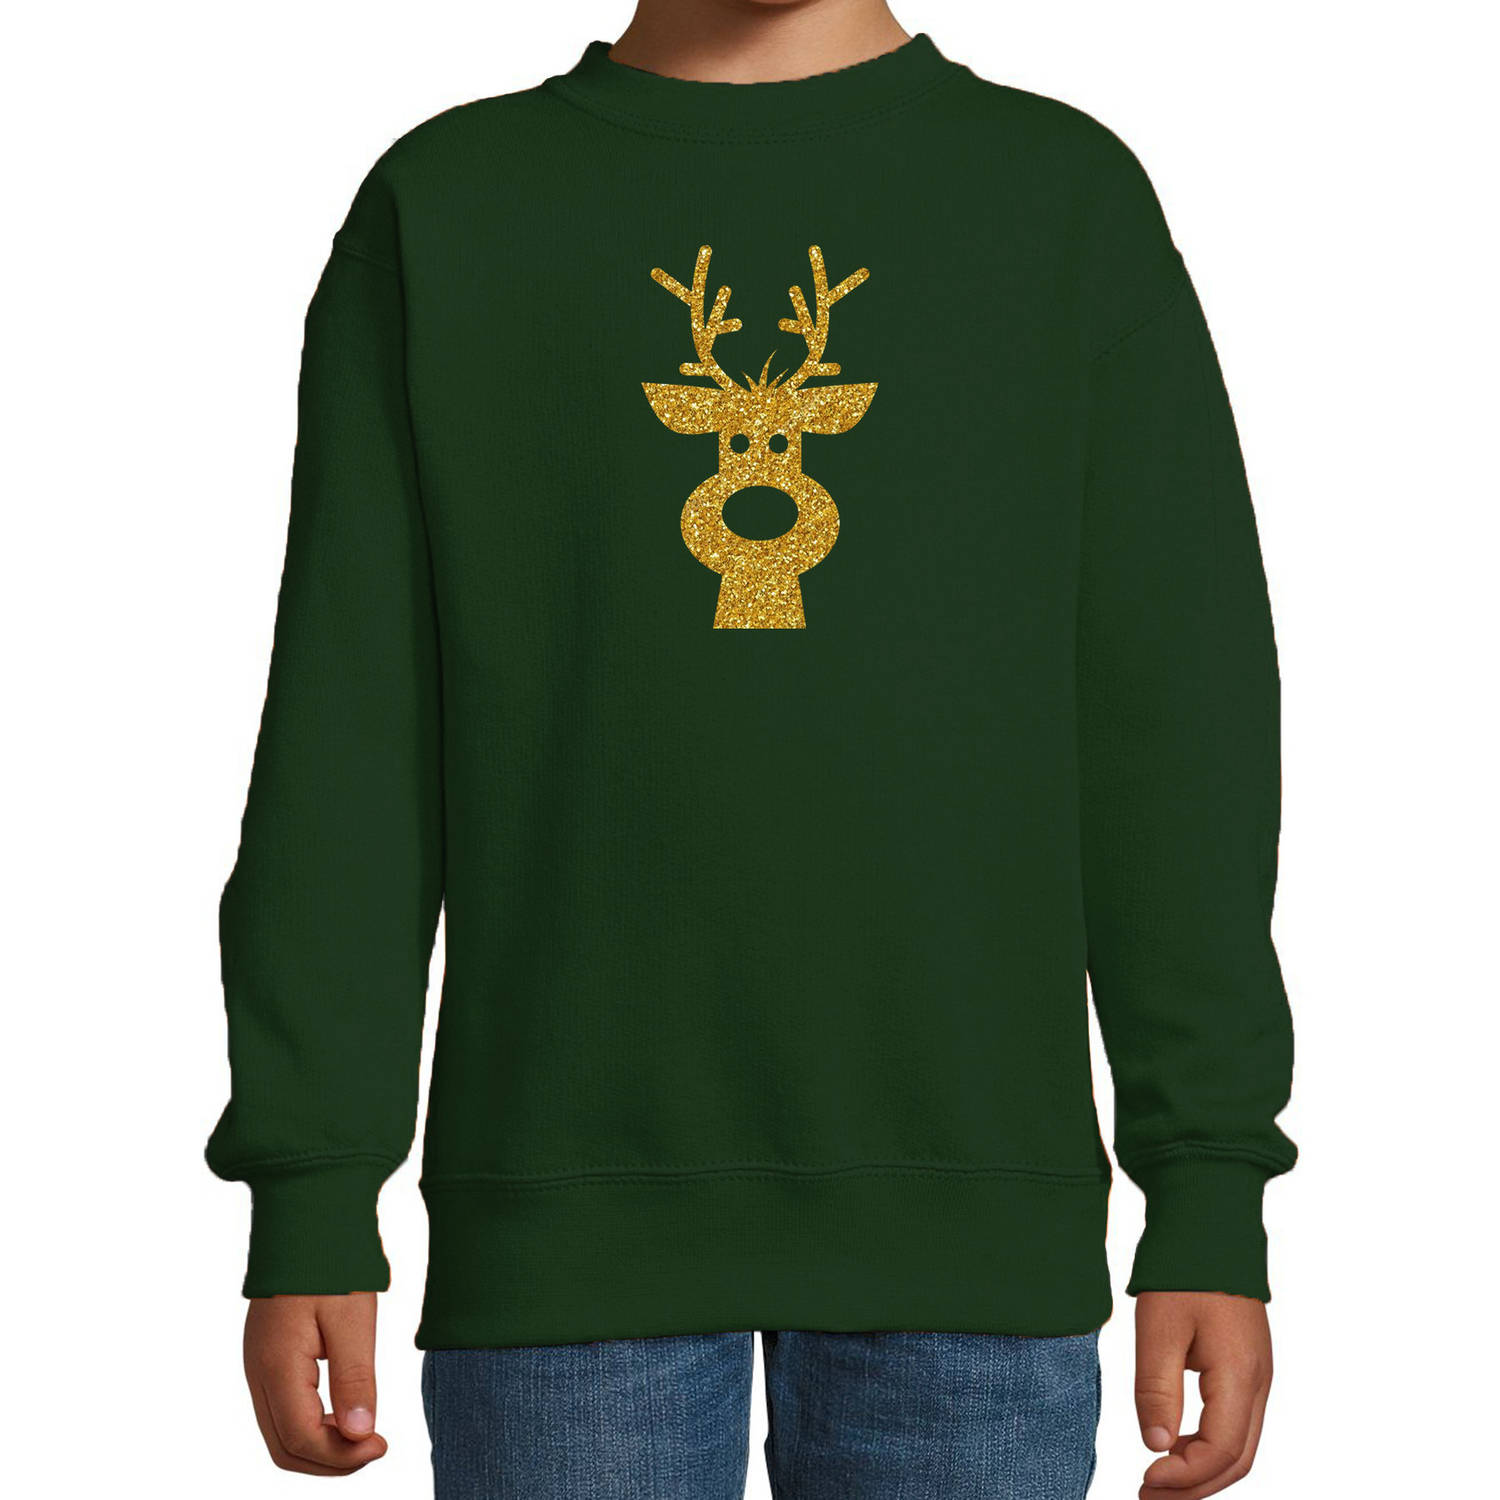 Rendier hoofd Kerstsweater / Kersttrui groen voor kinderen met gouden glitter bedrukking 3-4 jaar (98/104) - kerst truie